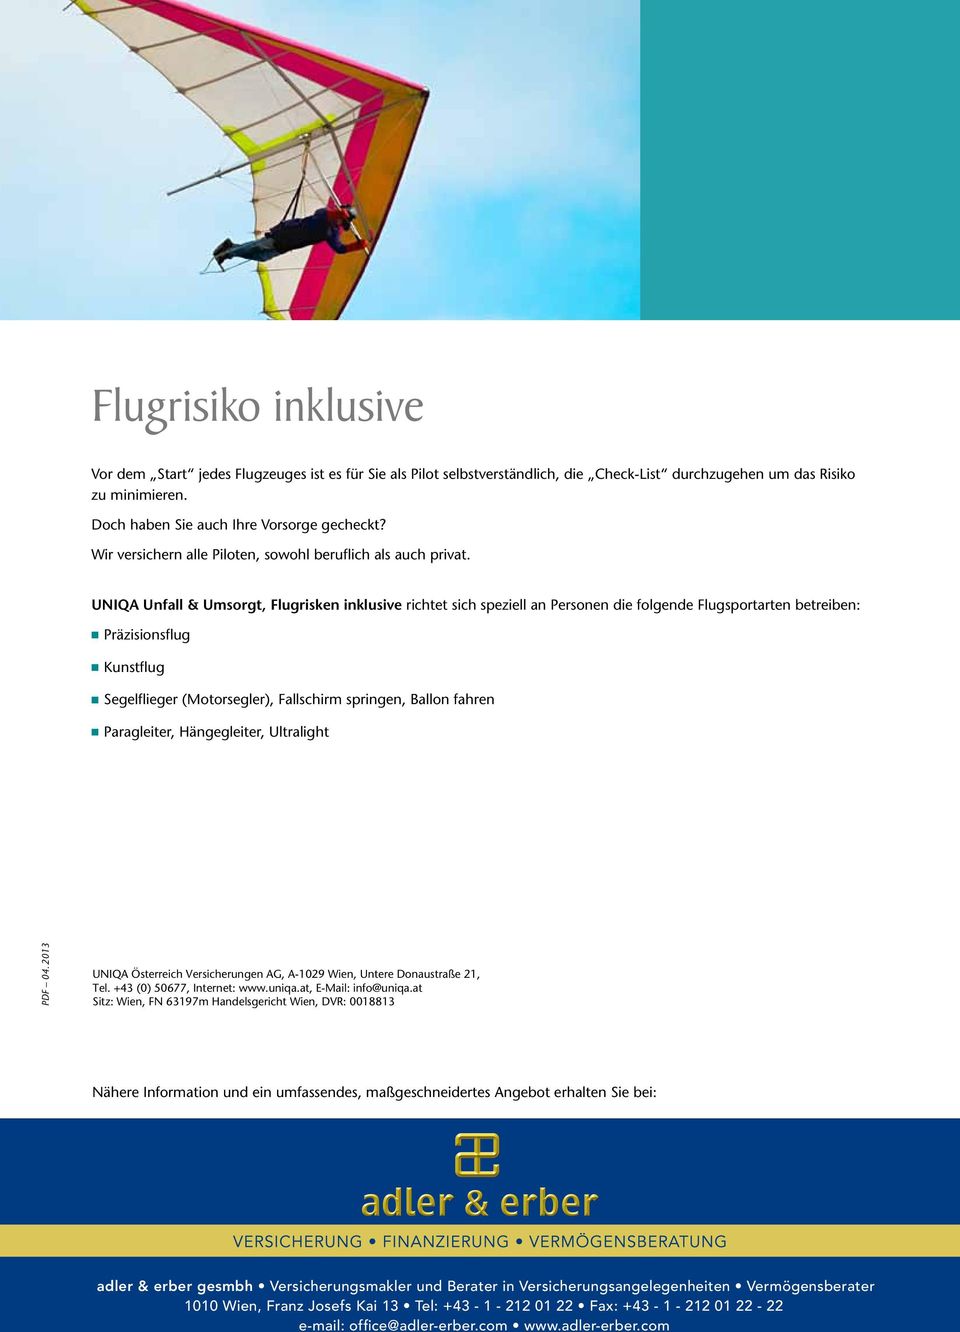 UNIQA Unfall & Umsorgt, Flugrisken inklusive richtet sich speziell an Personen die folgende Flugsportarten betreiben: Präzisionsflug Kunstflug Segelflieger (Motorsegler), Fallschirm springen, Ballon